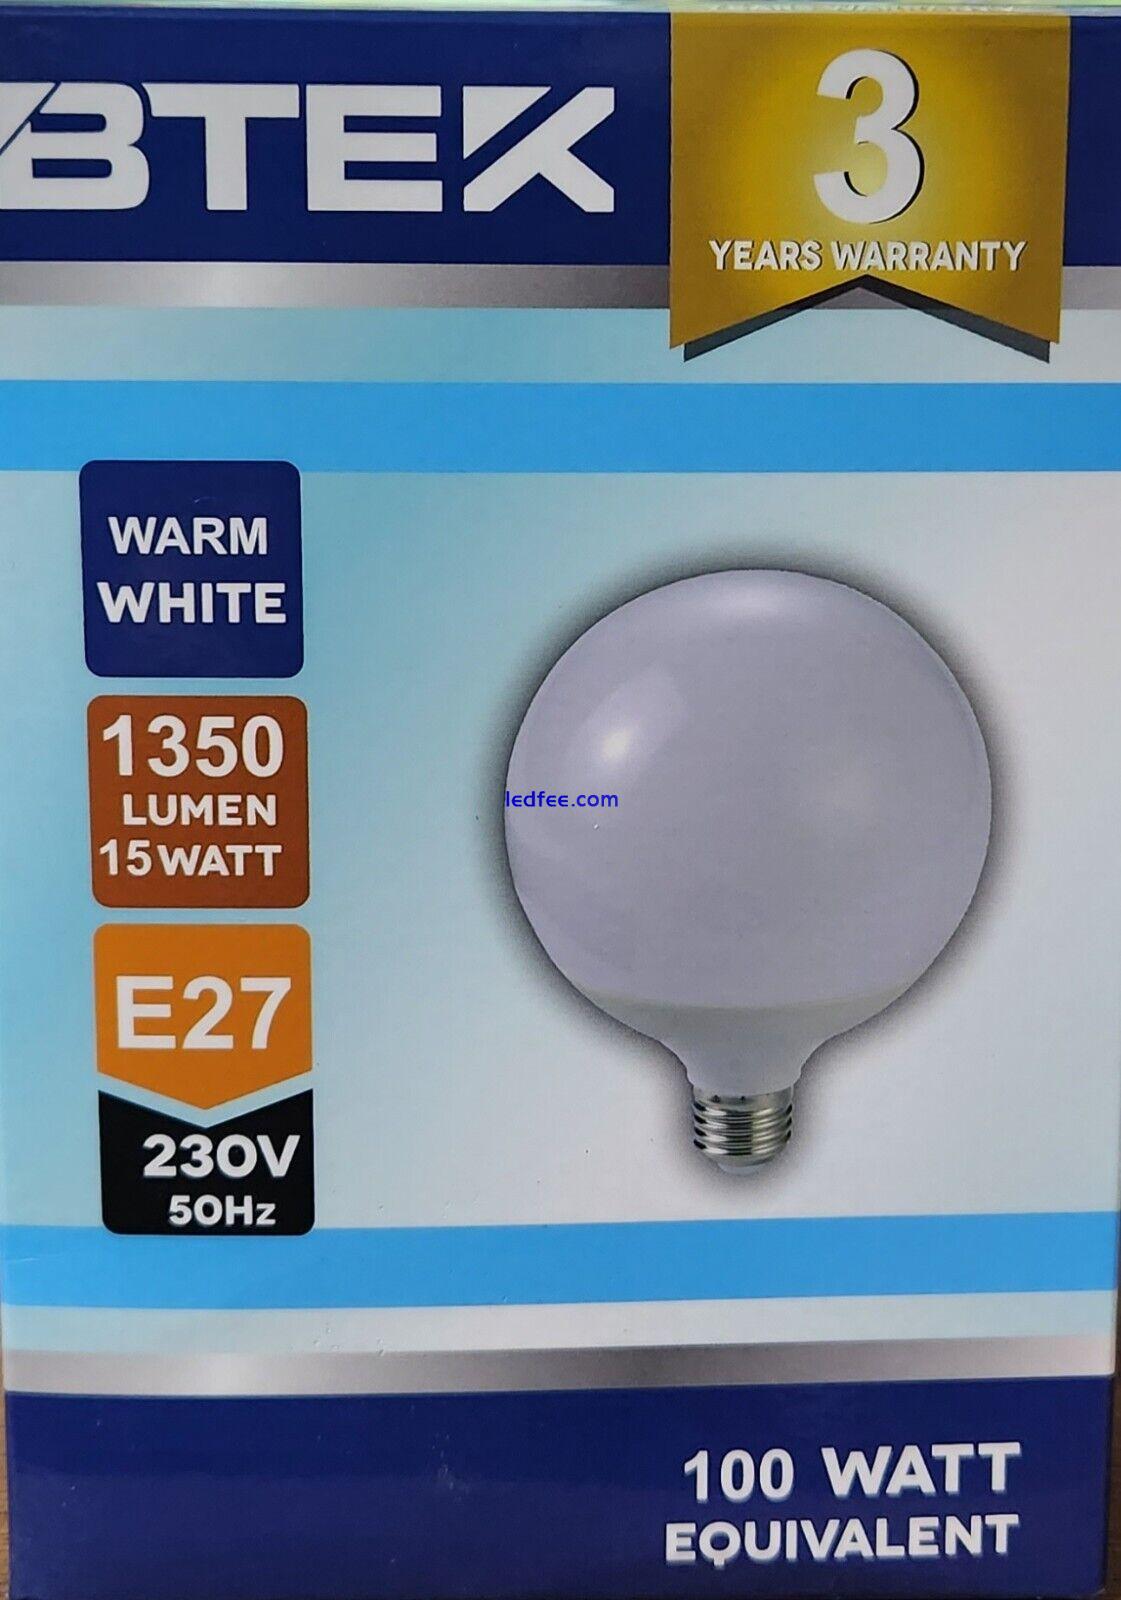 BTEK E27 15W Global Large Led Light Bulb WARM WHITE  5 